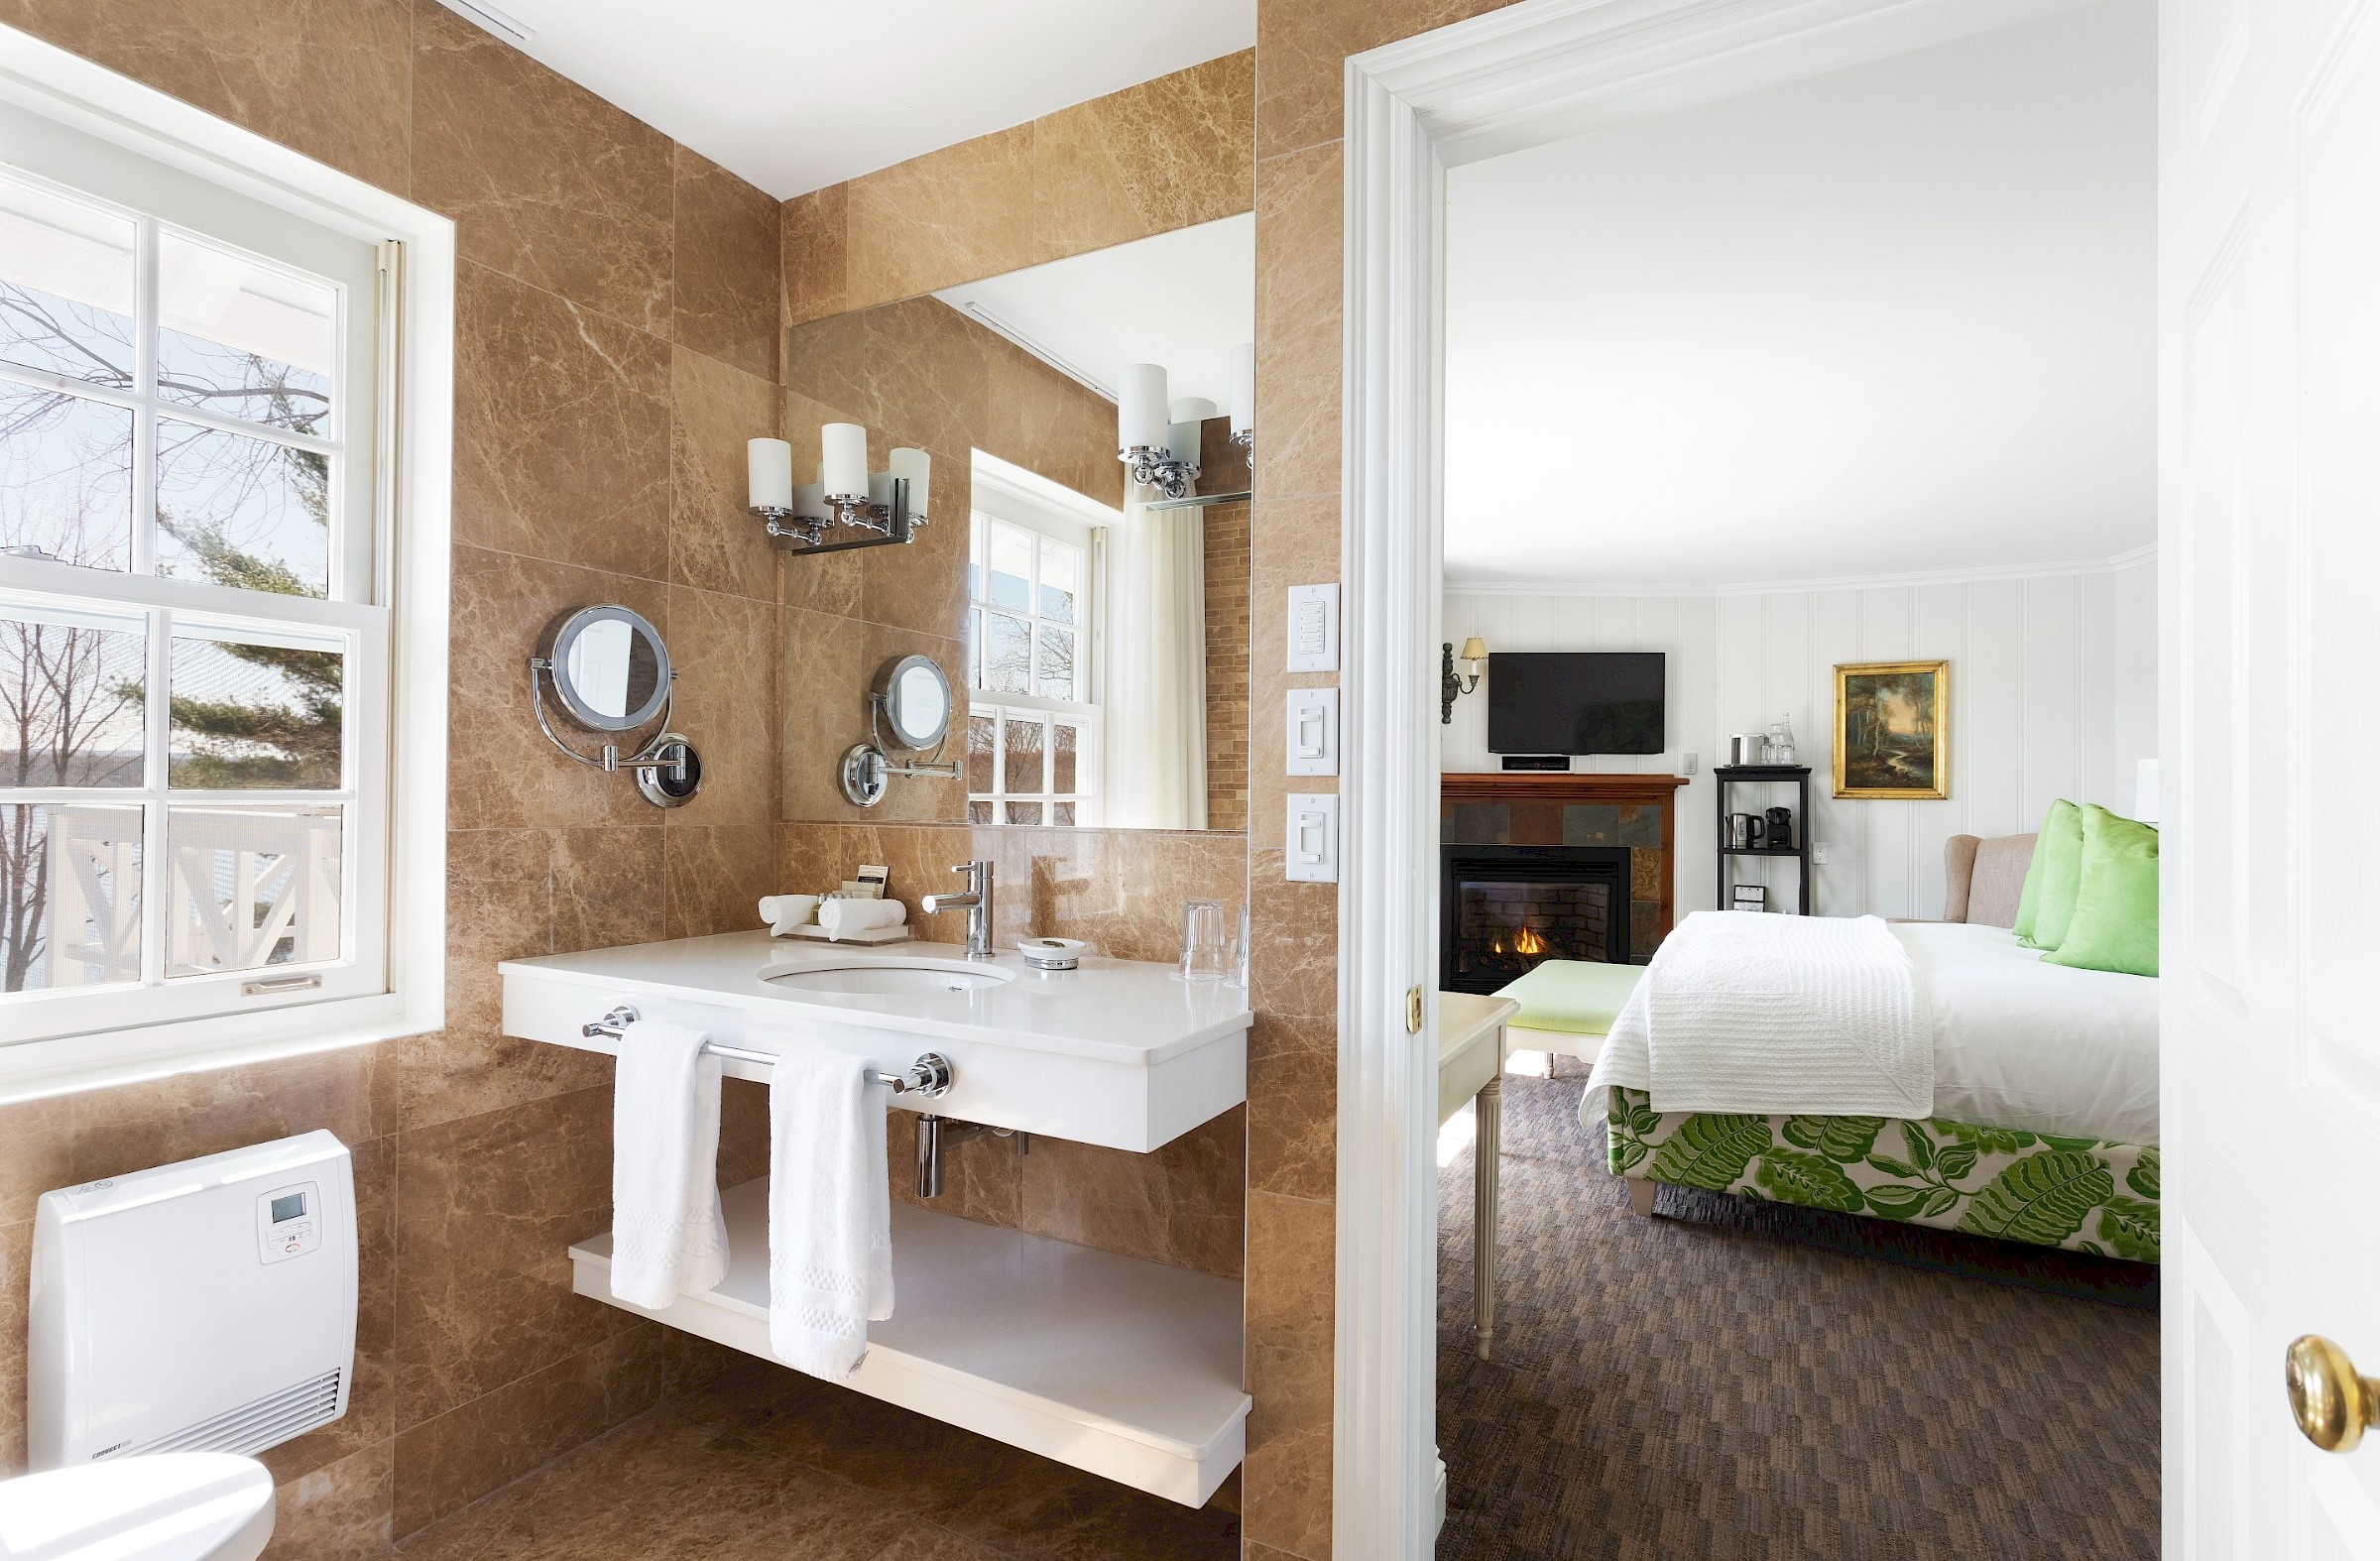 Salle de bain avec fenêtre dans une chambre de luxe